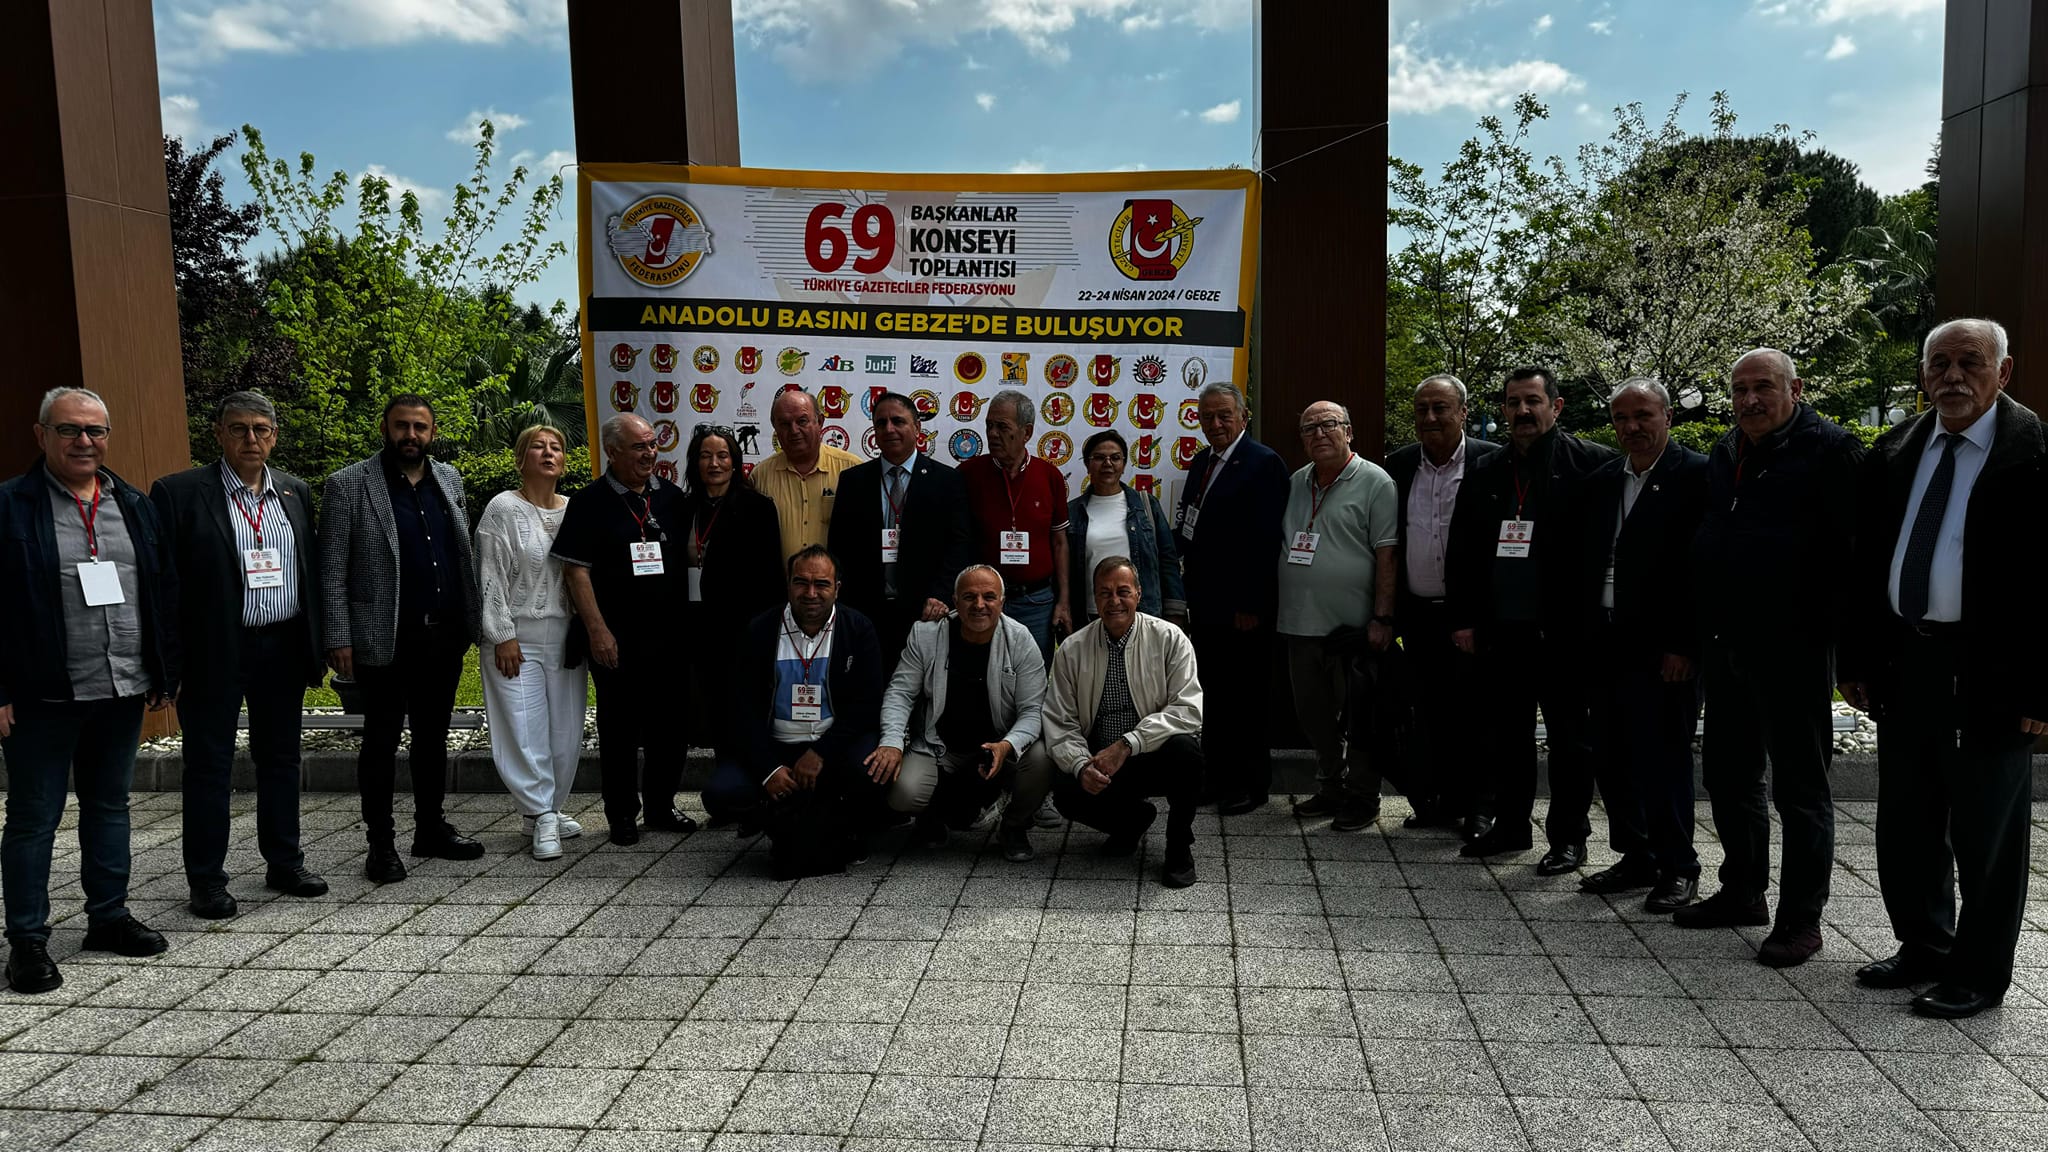 Türkiye Gazeteciler Federasyonu, 69. Kocaeligebze Başkanlar Konseyi Sonuç Bildirgesi'ni Yayınladı.